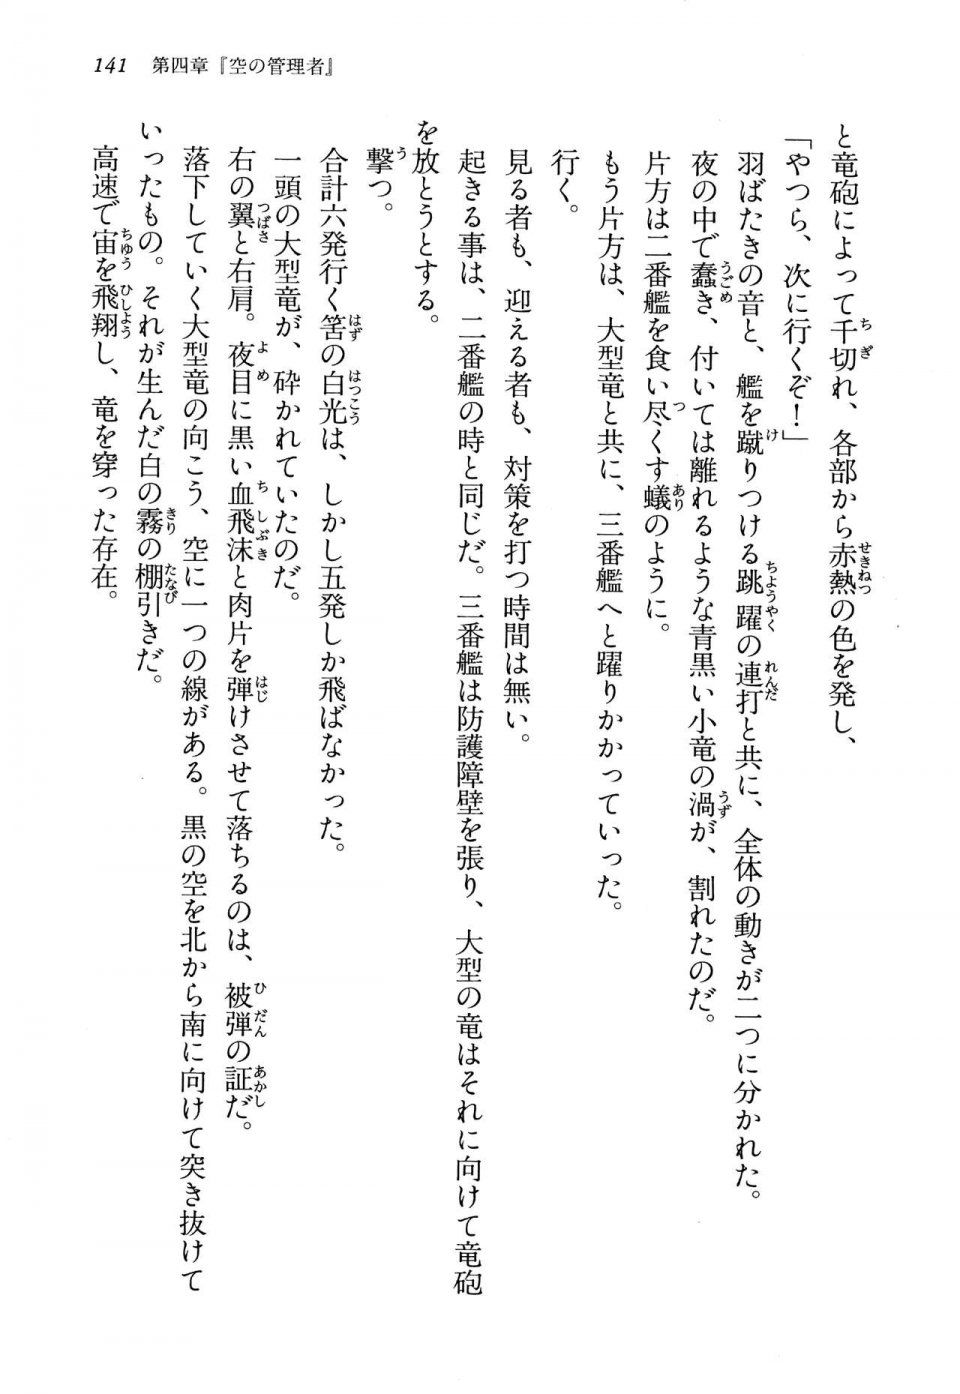 Kyoukai Senjou no Horizon LN Vol 13(6A) - Photo #141